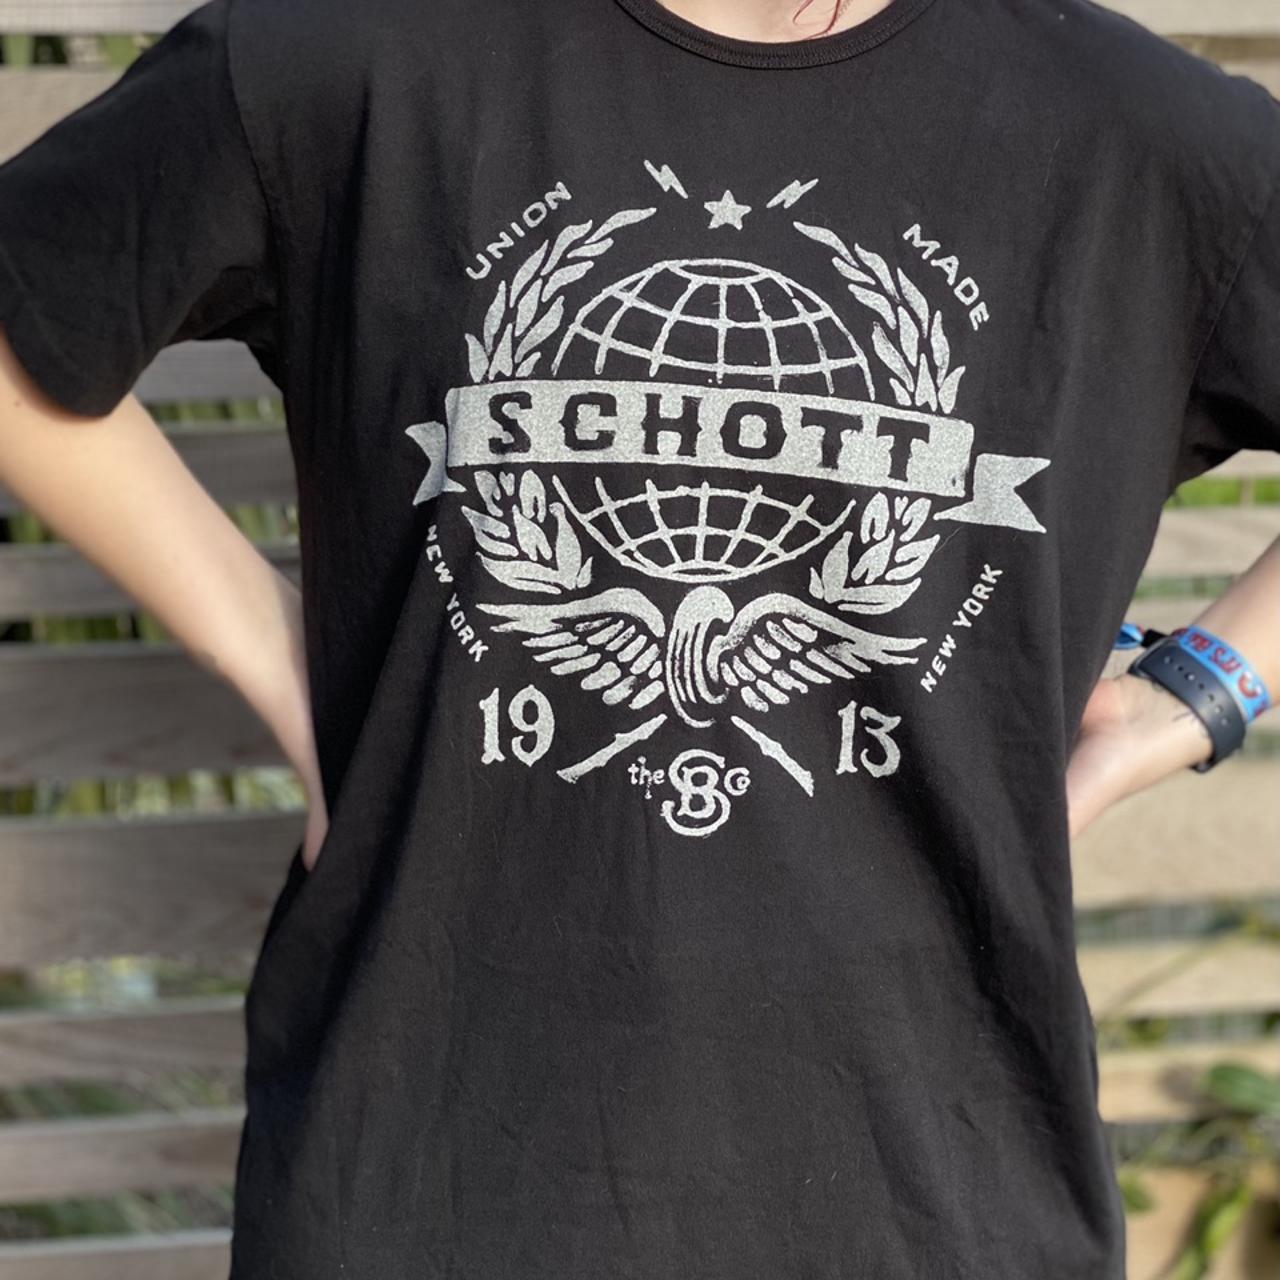 Schott Men's Grey T-shirt